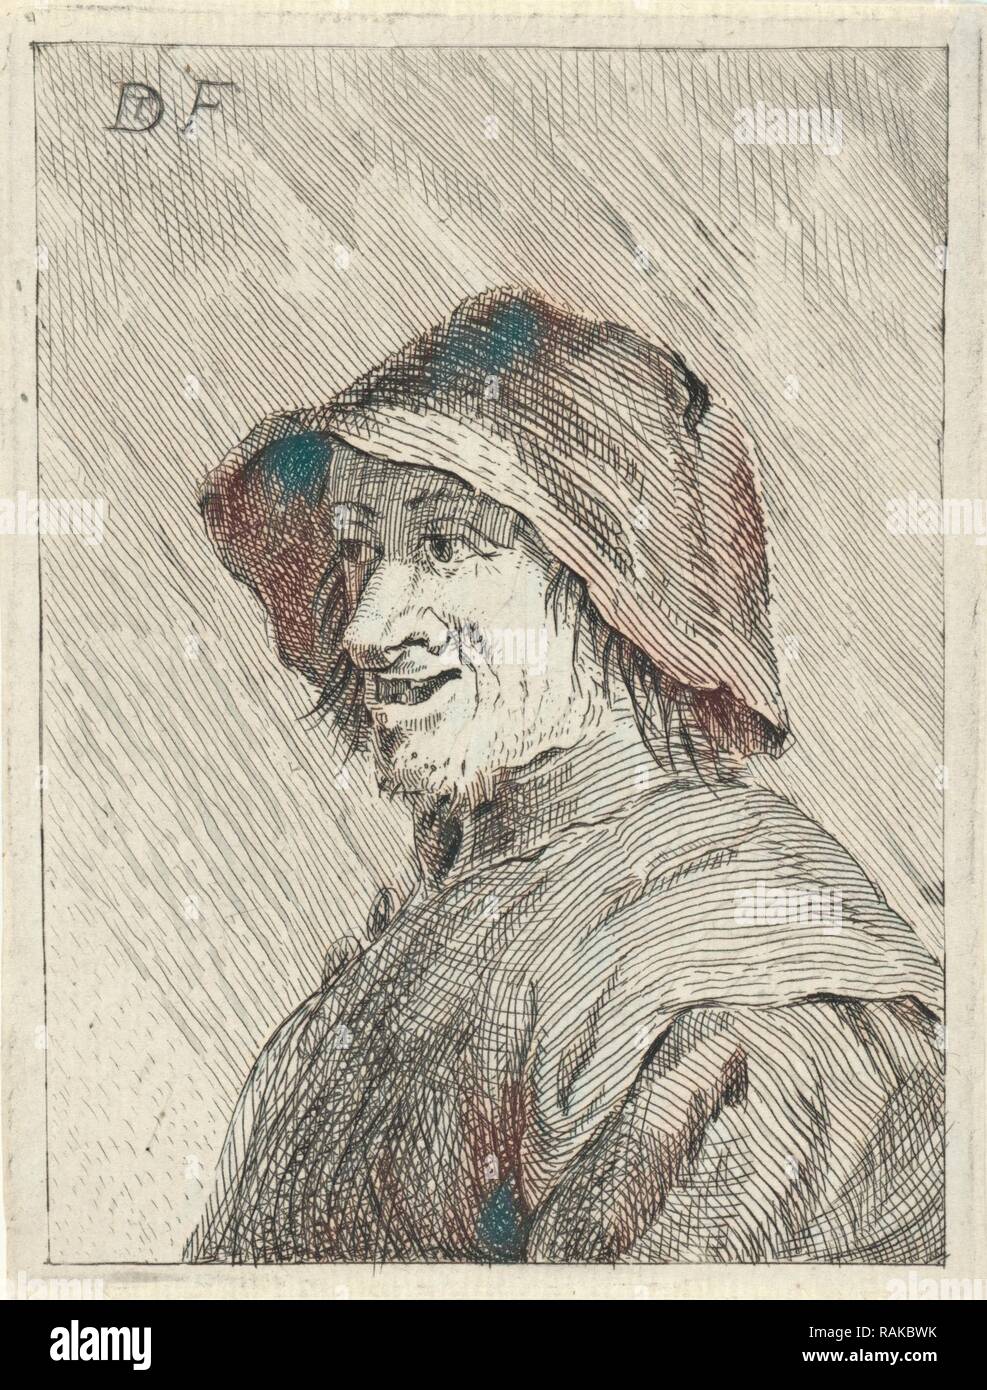 Contadino con hat sulla testa a sinistra, anonimo, 1626 - 1740. Reinventato da Gibon. Arte Classica con un tocco di moderno reinventato Foto Stock